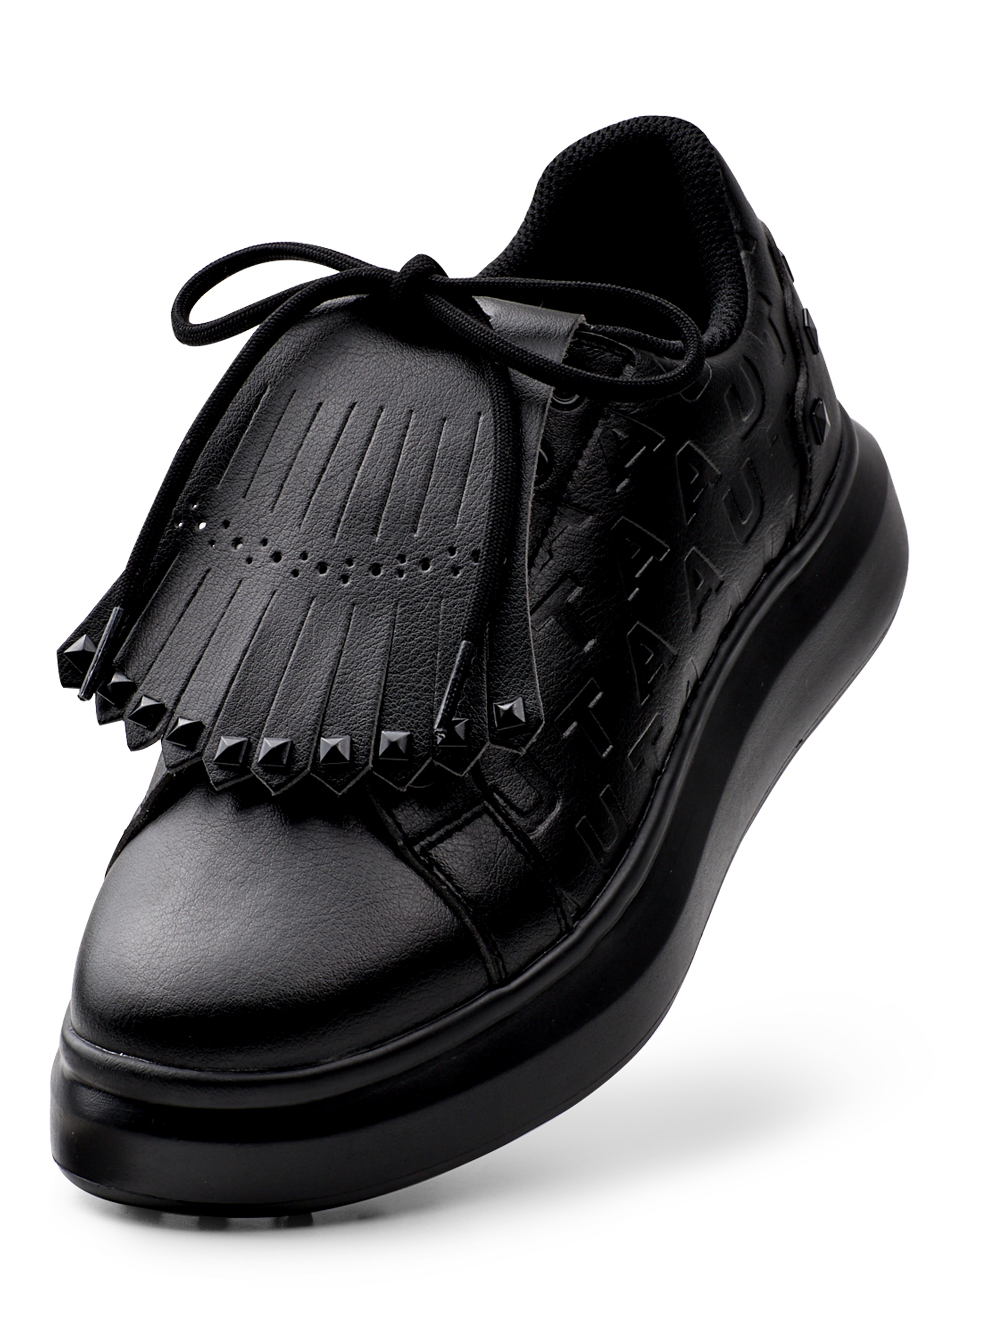 UTAA Marker Derby Stud Kiltie Sneakers : Women&#039;s Black (UC0GHF110BK)